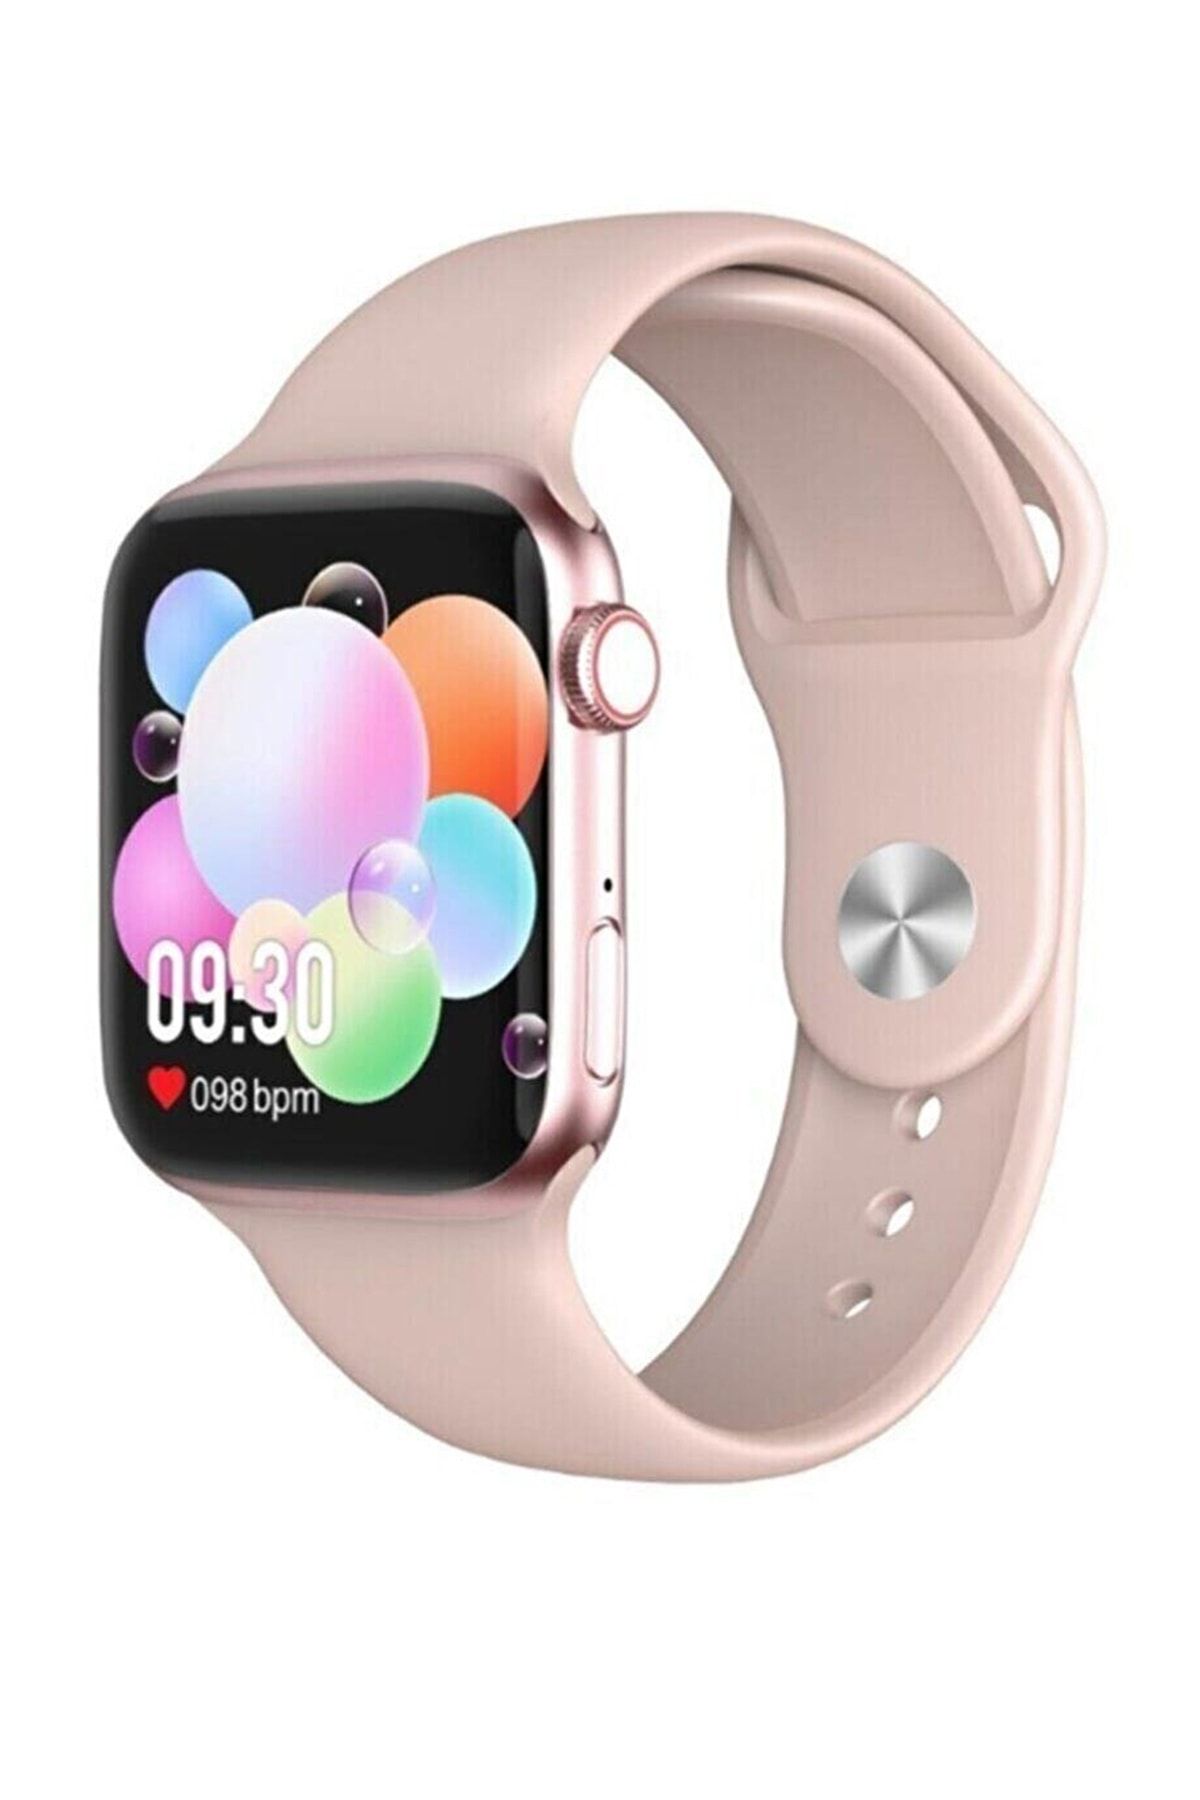 BONJUX Samsung Galaxy A20s Uyumlu Smart Watch Türkçe Menü Nabız Tansiyon Ölçer Ip67 Akıllı Saat Pembe